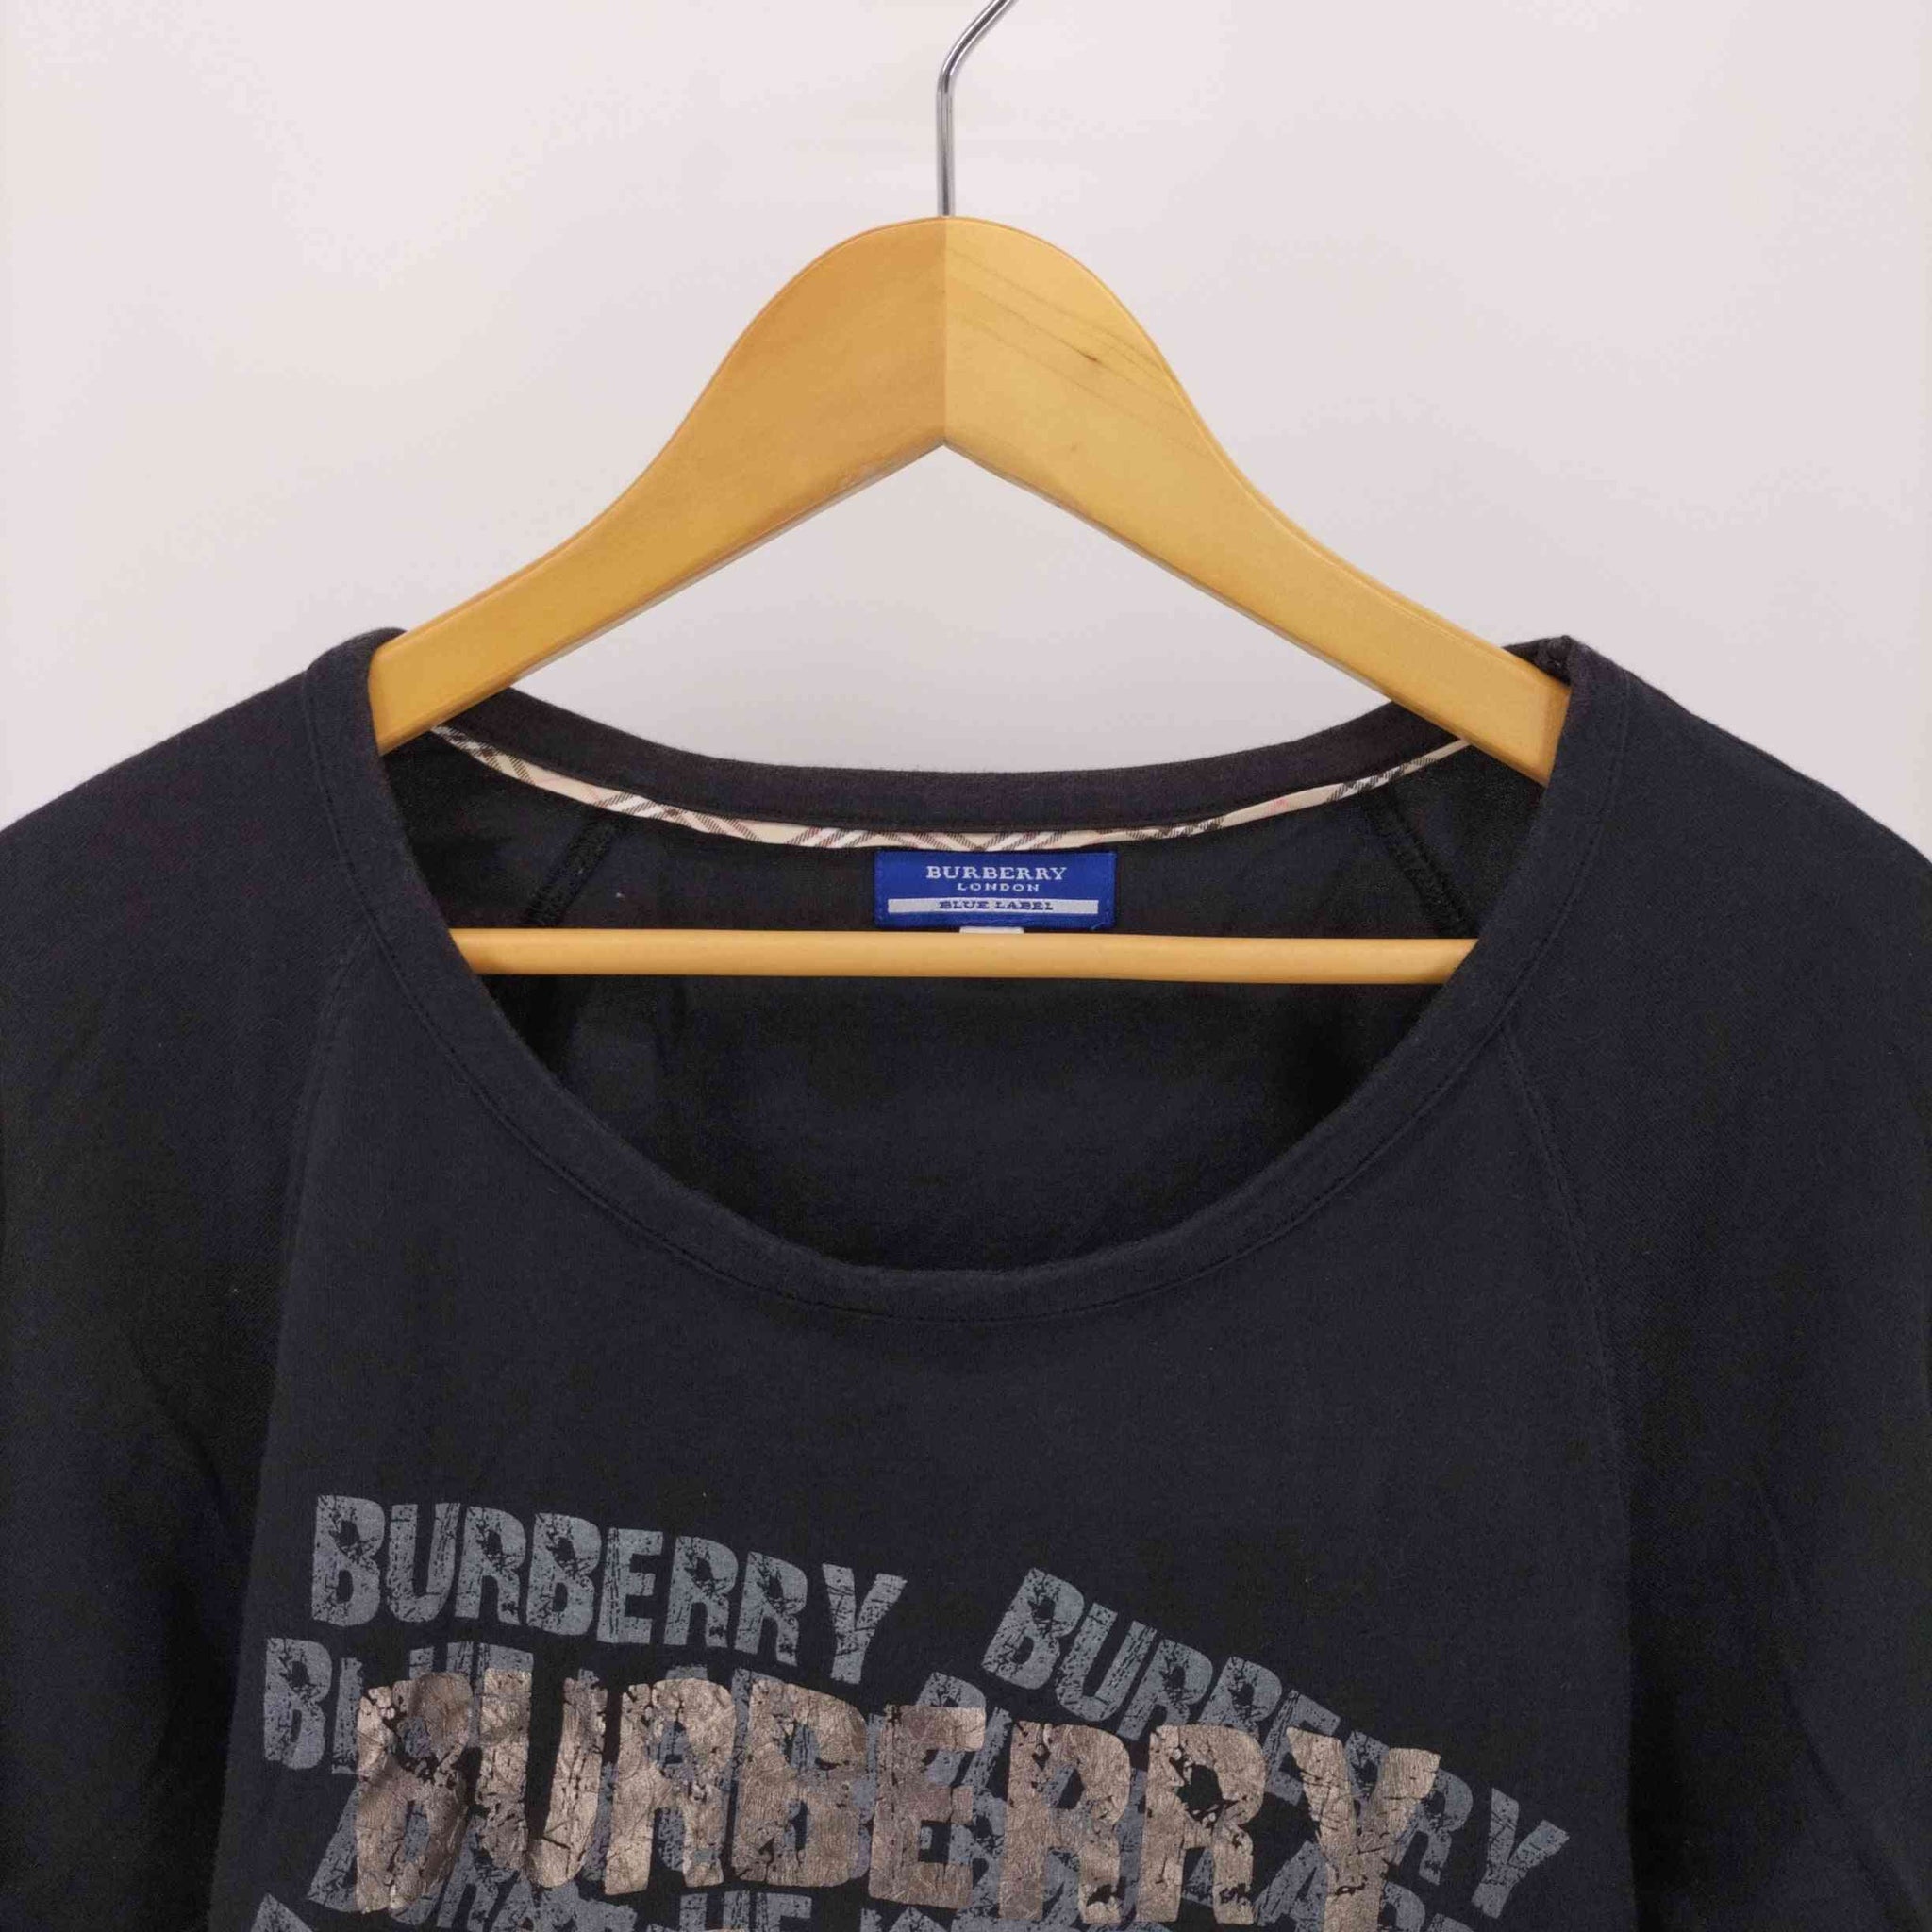 BURBERRY BLUE LABEL(バーバリーブルーレーベル)ブランドロゴ プリント